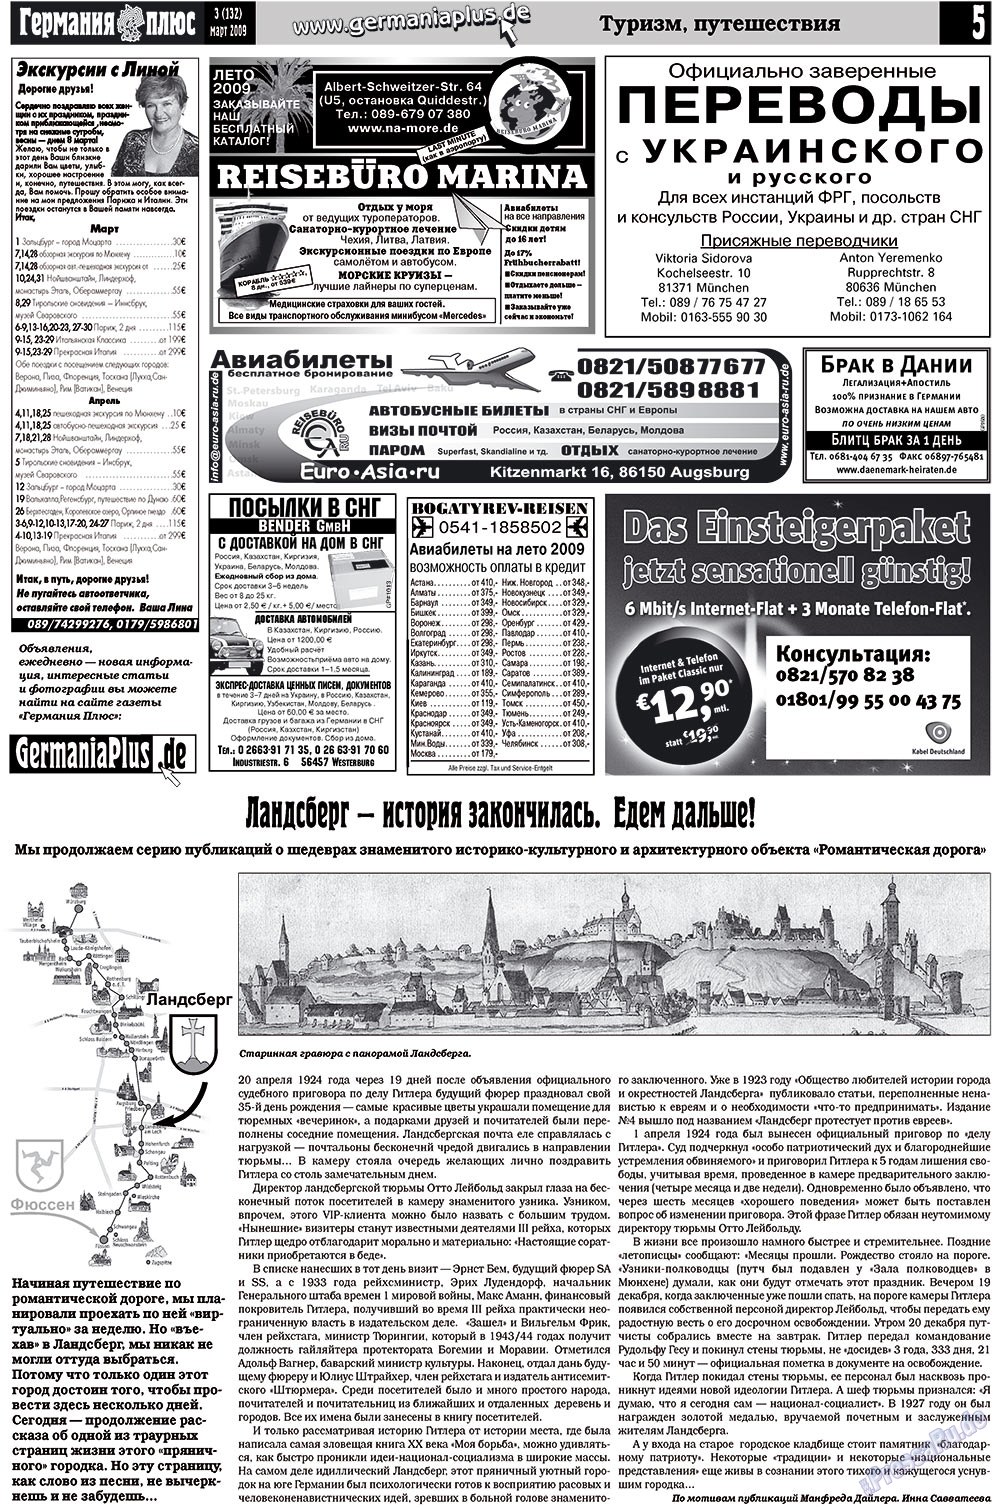 Германия плюс, газета. 2009 №3 стр.5